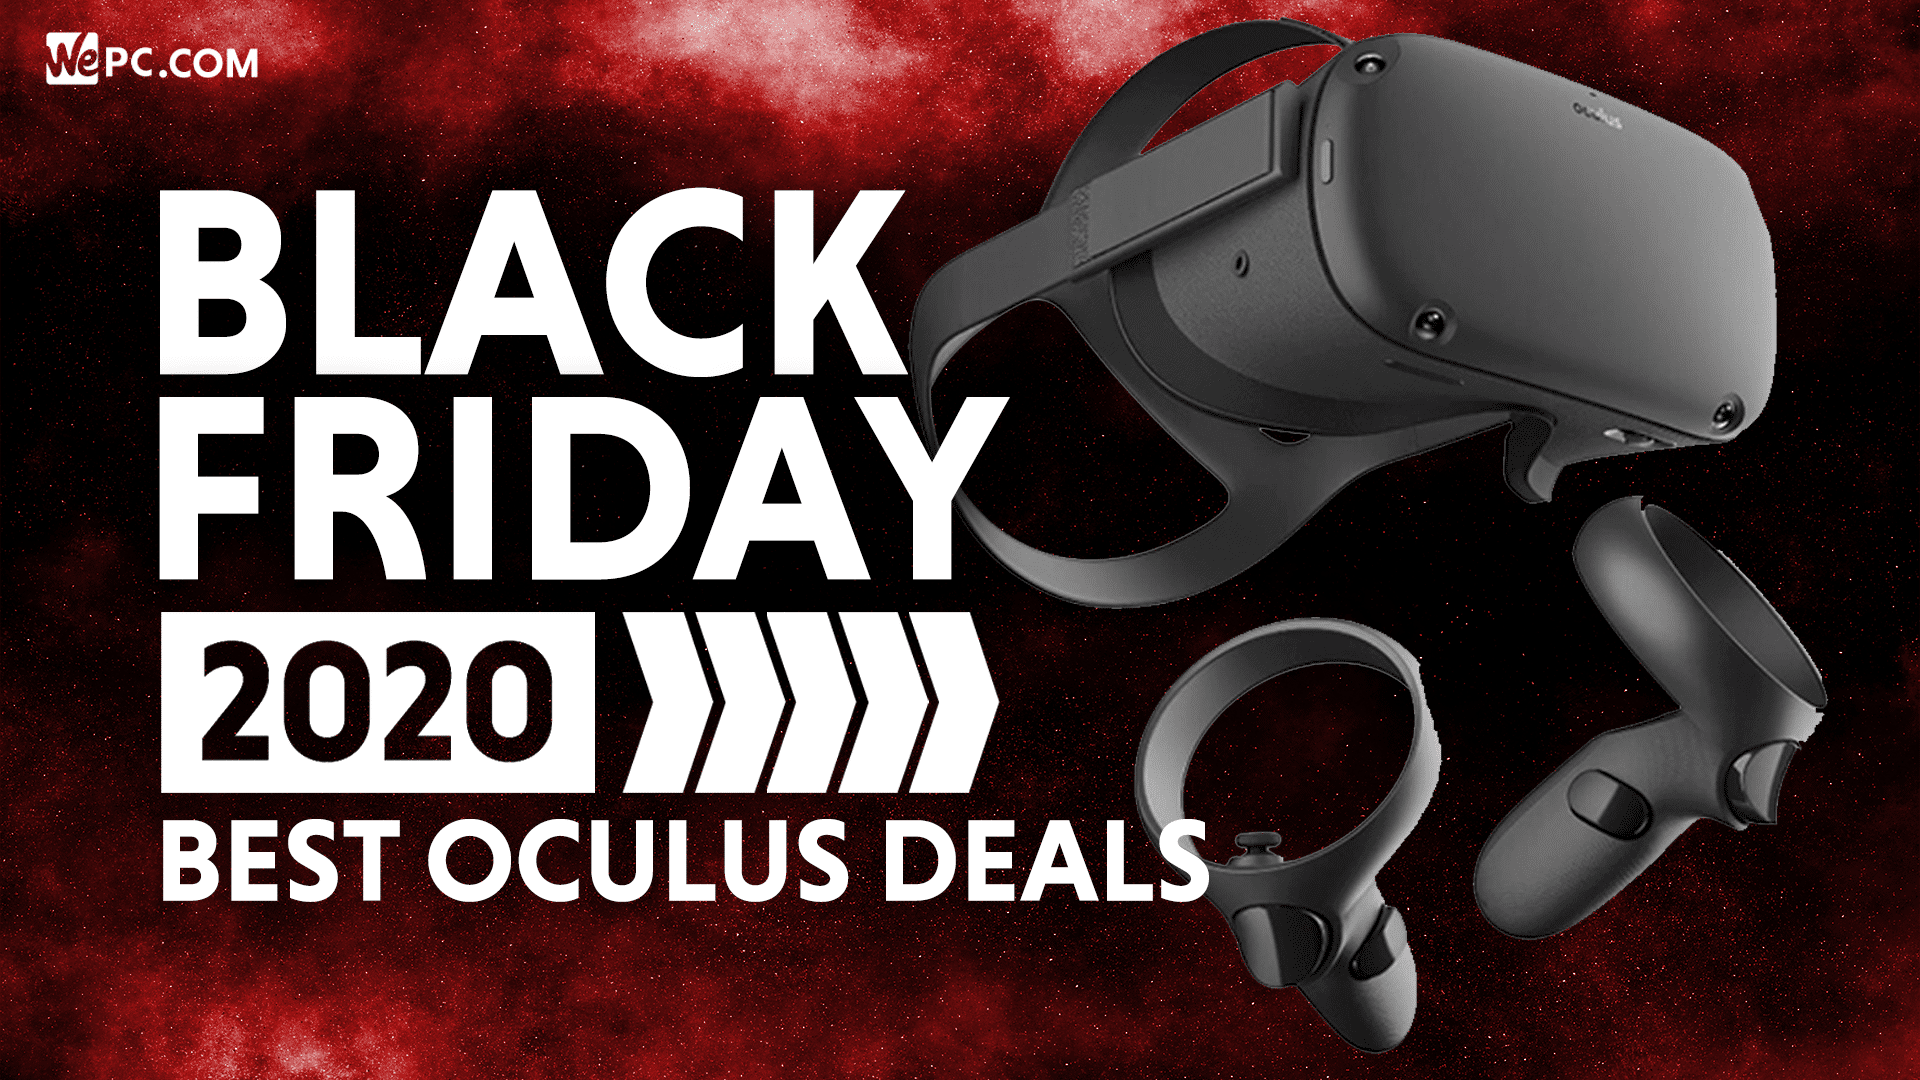 oculus rift s black friday 2020